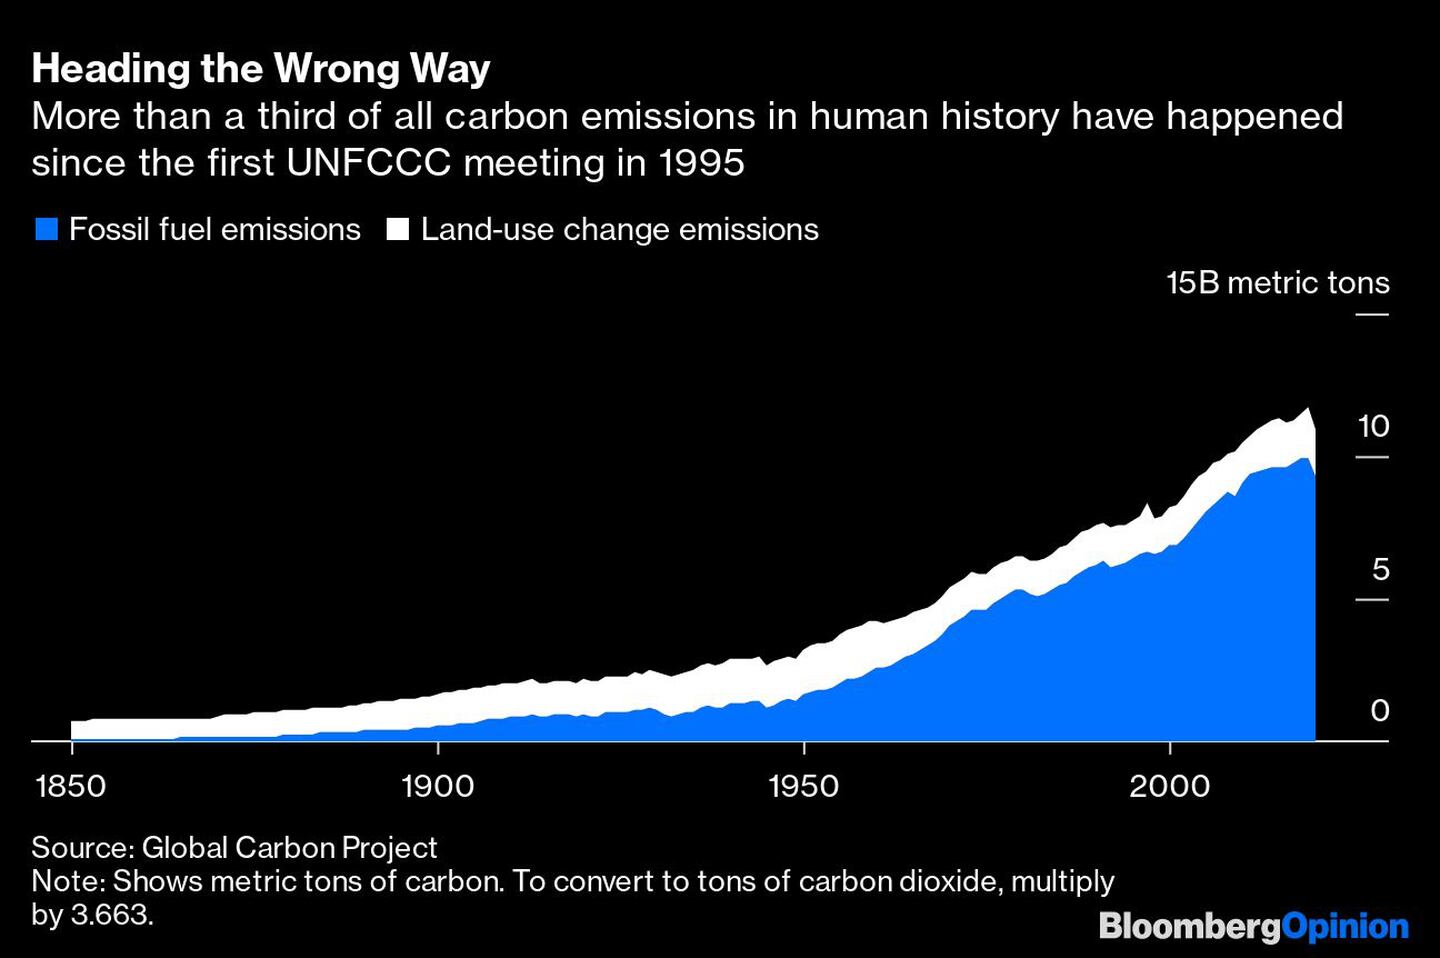 Mais de um terço das emissões de carbono da história ocorreram desde a primeira reunião da Convenção das Nações Unidas sobre a Mudança do Clima em 1995dfd